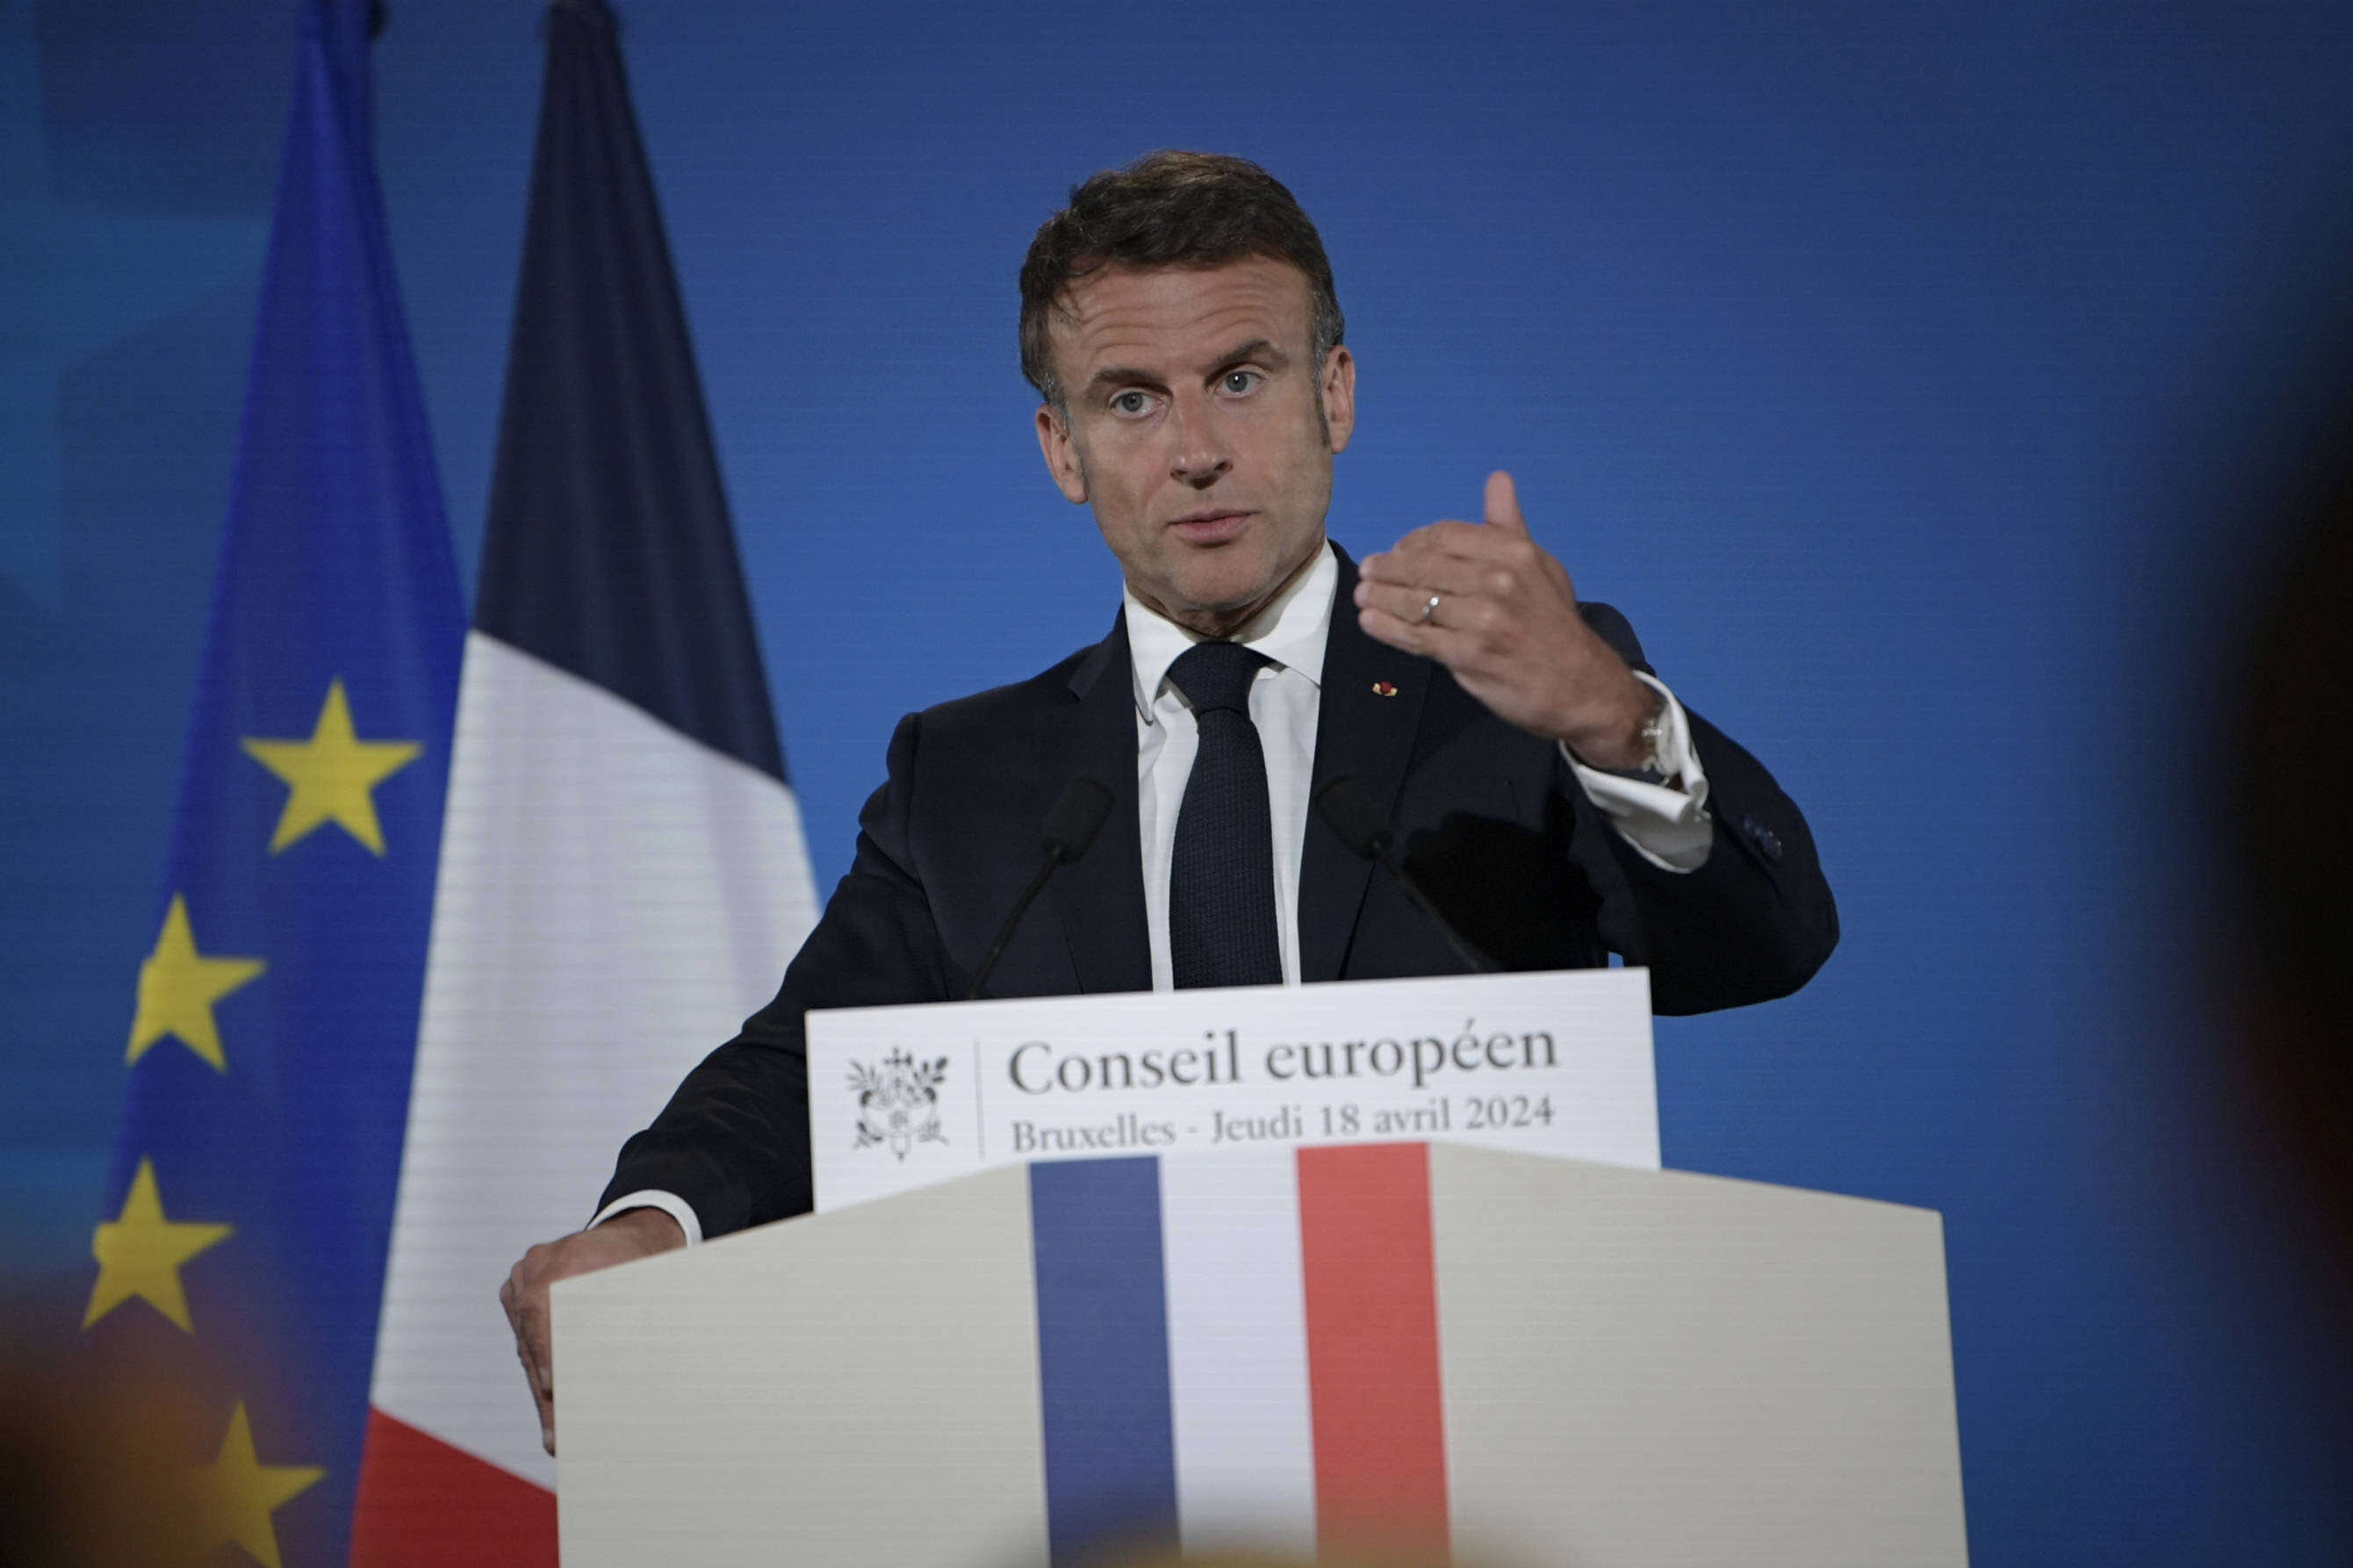 Macron à la Sorbonne : quelle « nouvelle feuille de route » pour l’Union européenne ?